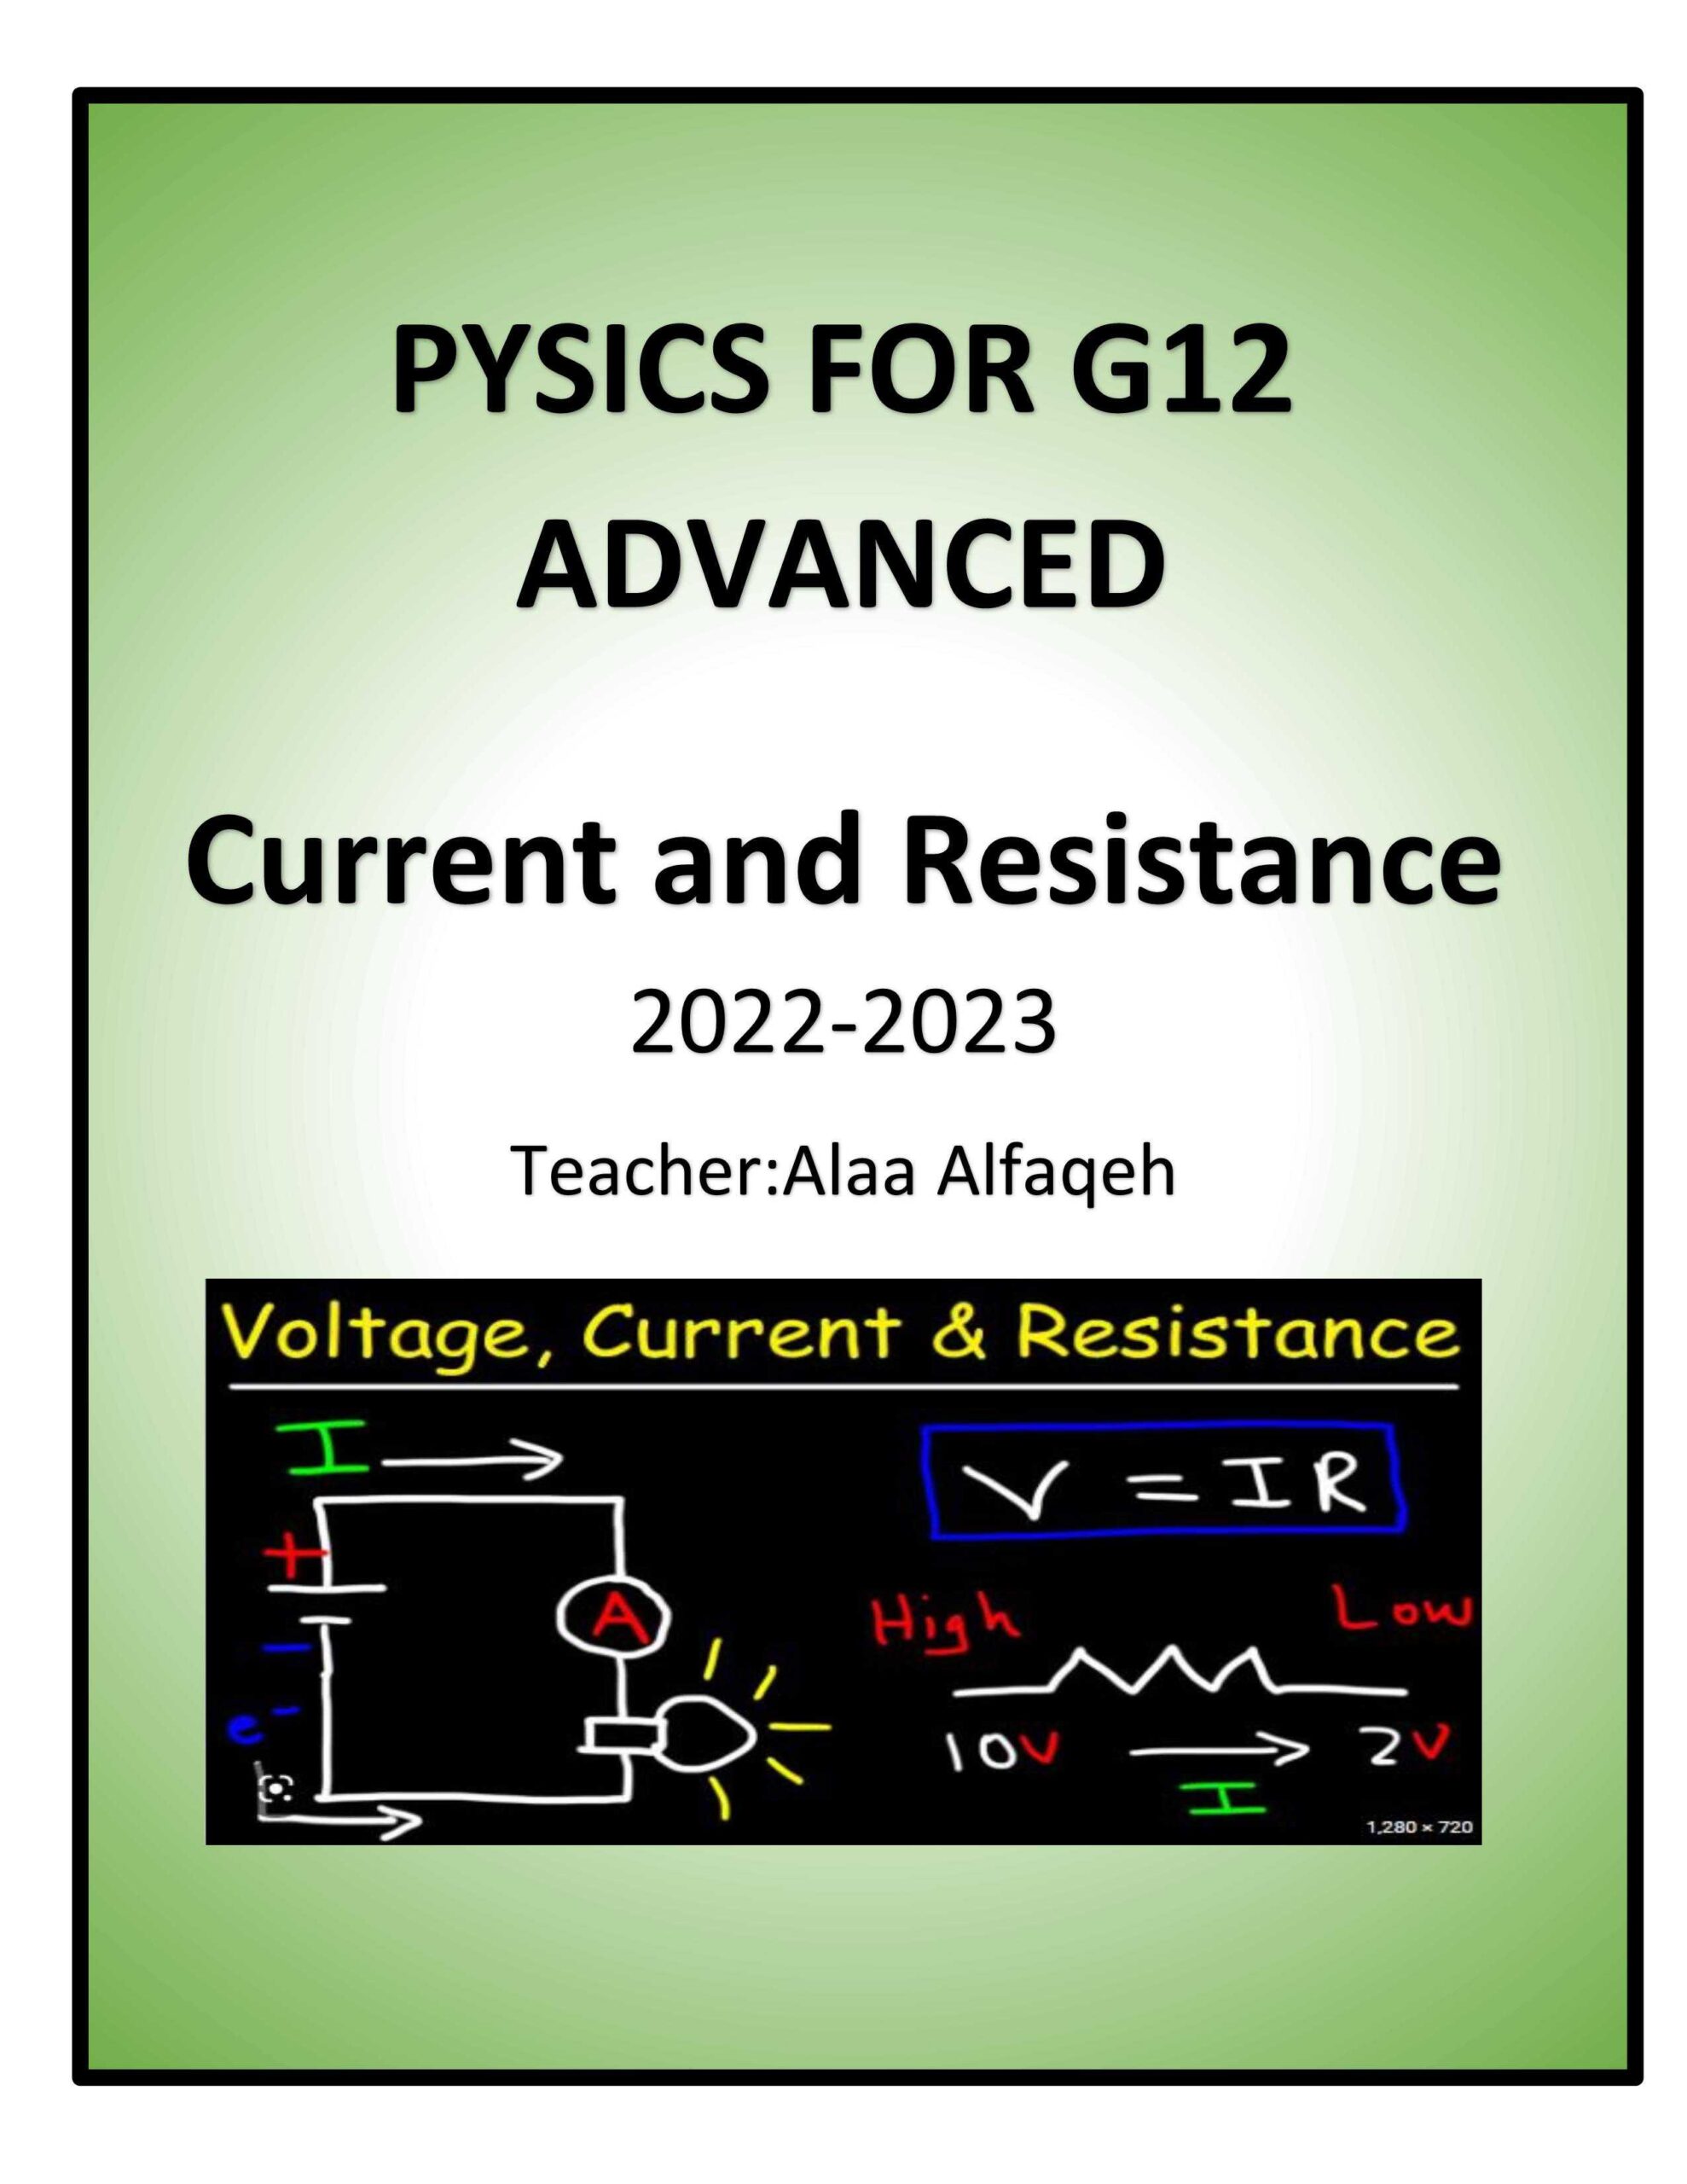 تدريبات Current and resistance الفيزياء الصف الثاني عشر